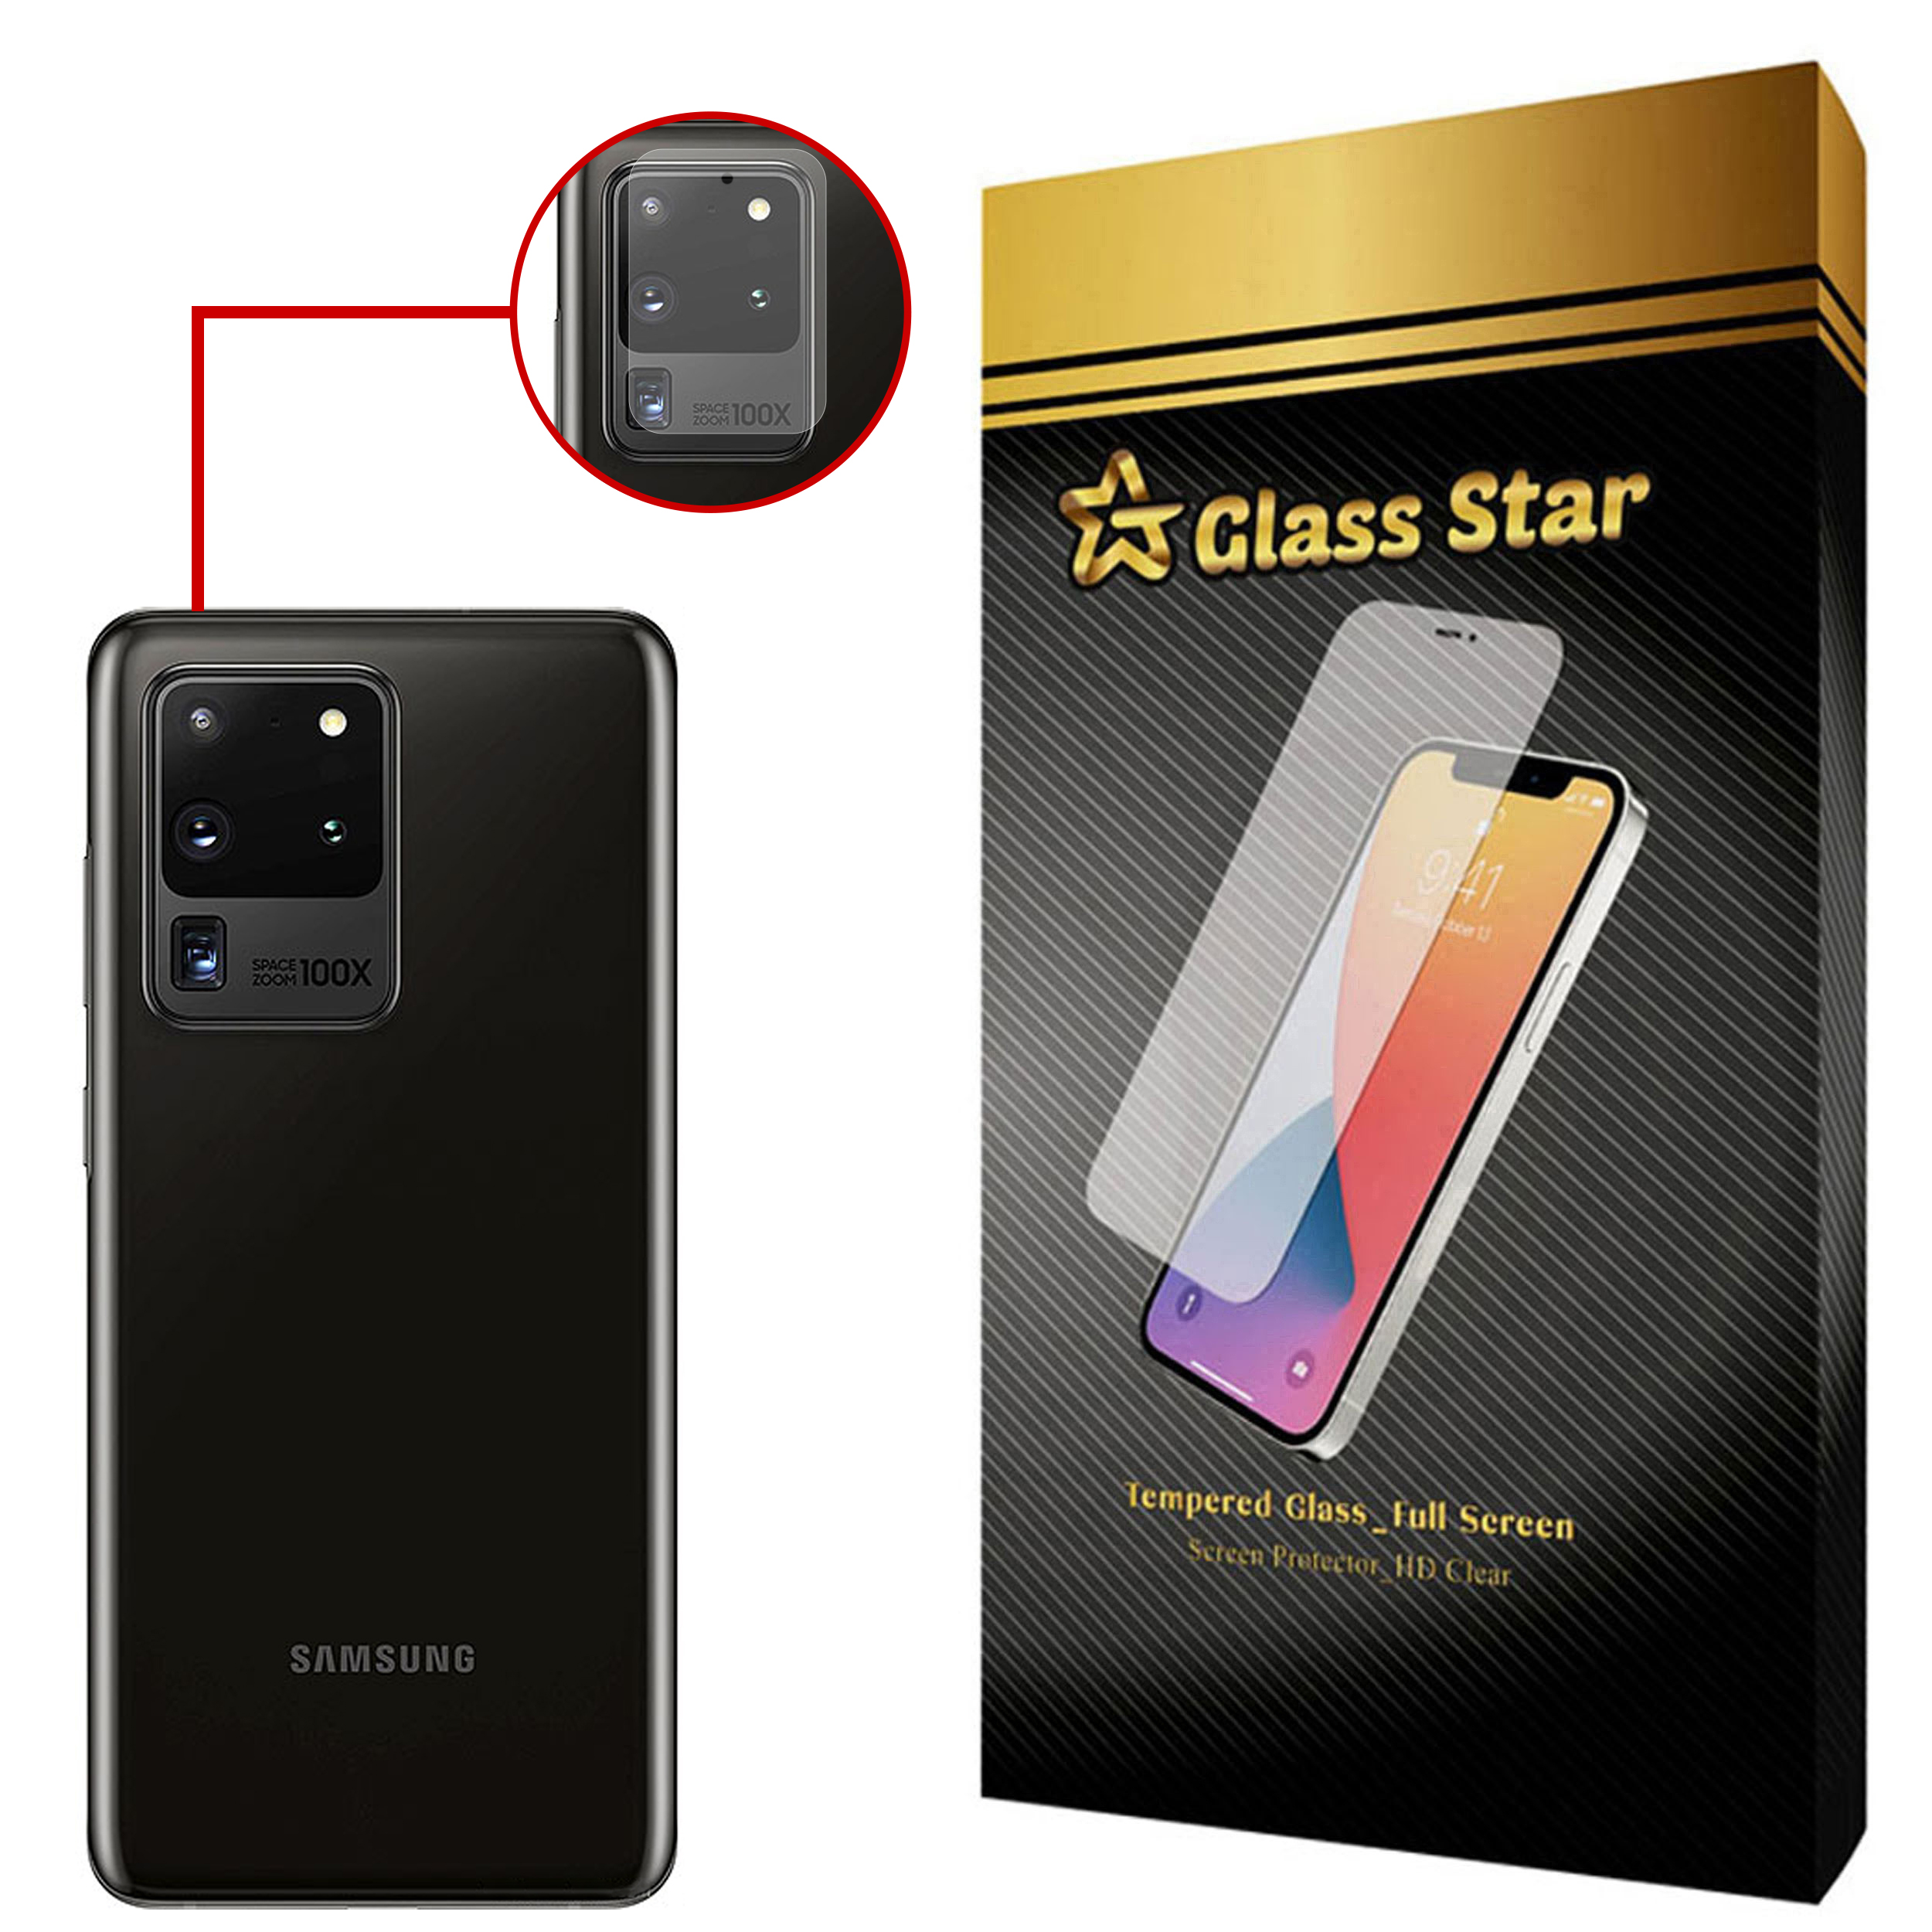 محافظ لنز دوربین گلس استار مدل PLX مناسب برای گوشی موبایل سامسونگ Galaxy S20 Ultra